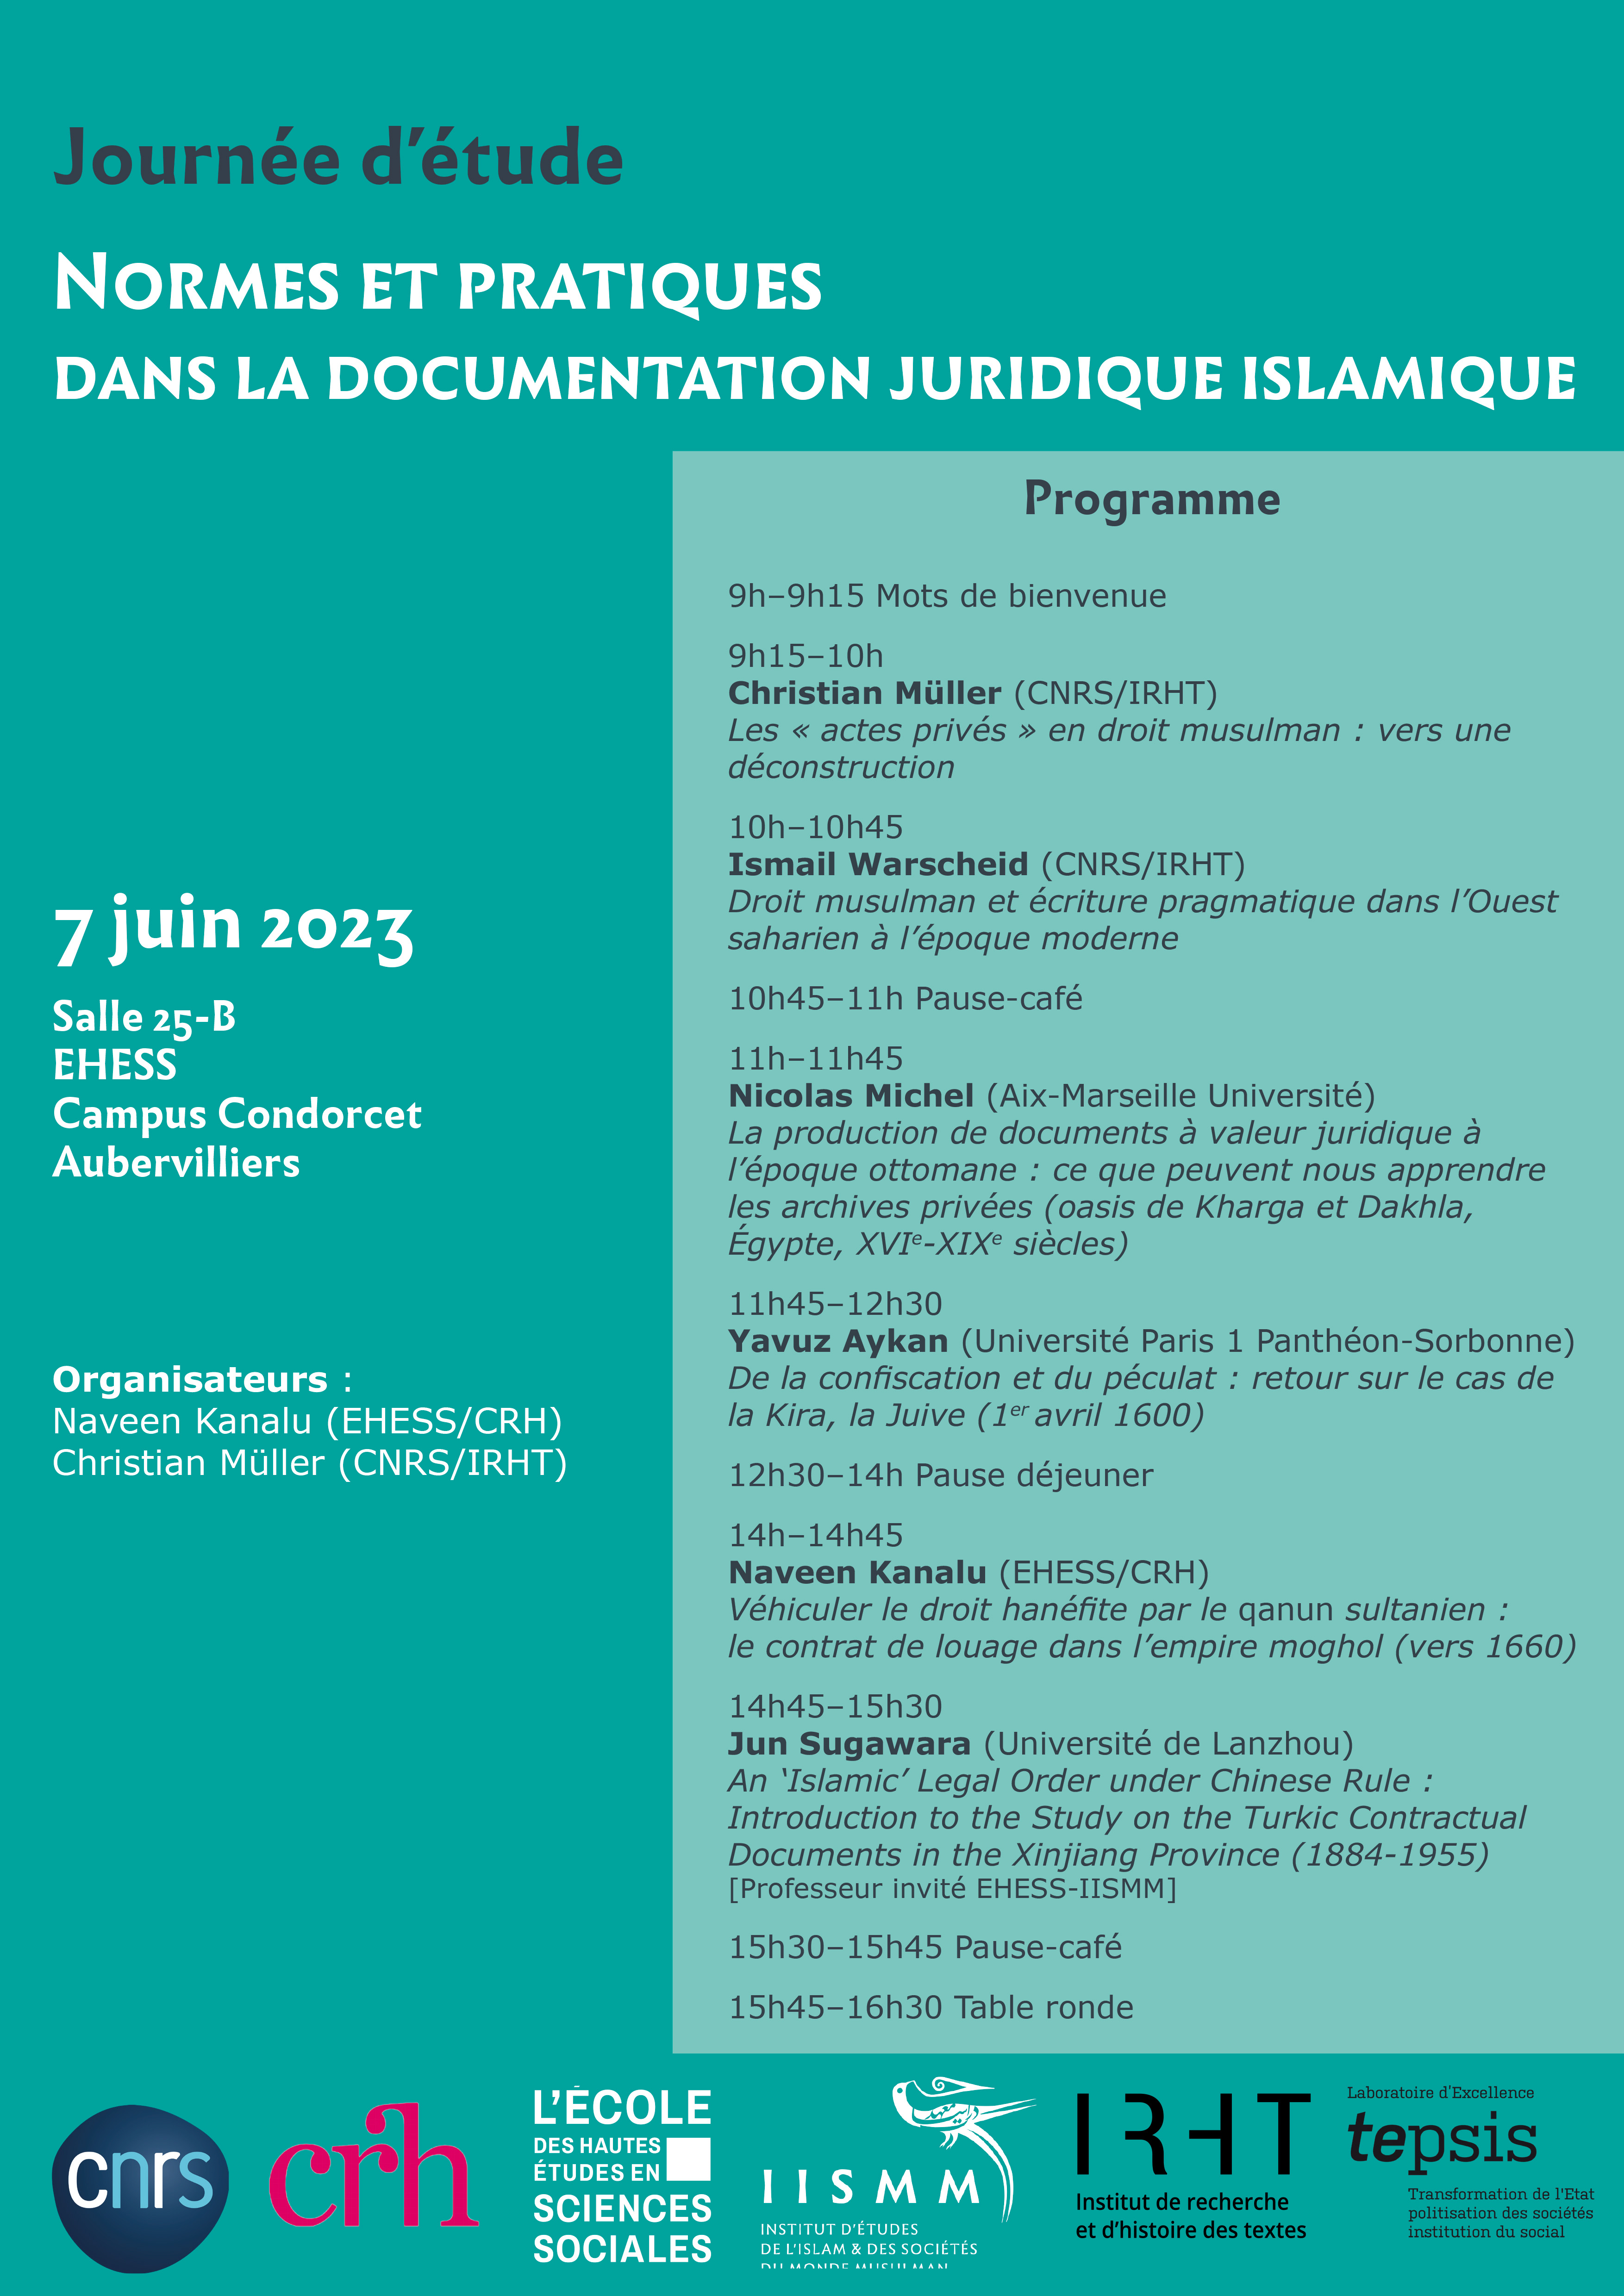 Normes et pratiques dans la documentation juridique islamique / Norms and practices in Islamic legal documentation